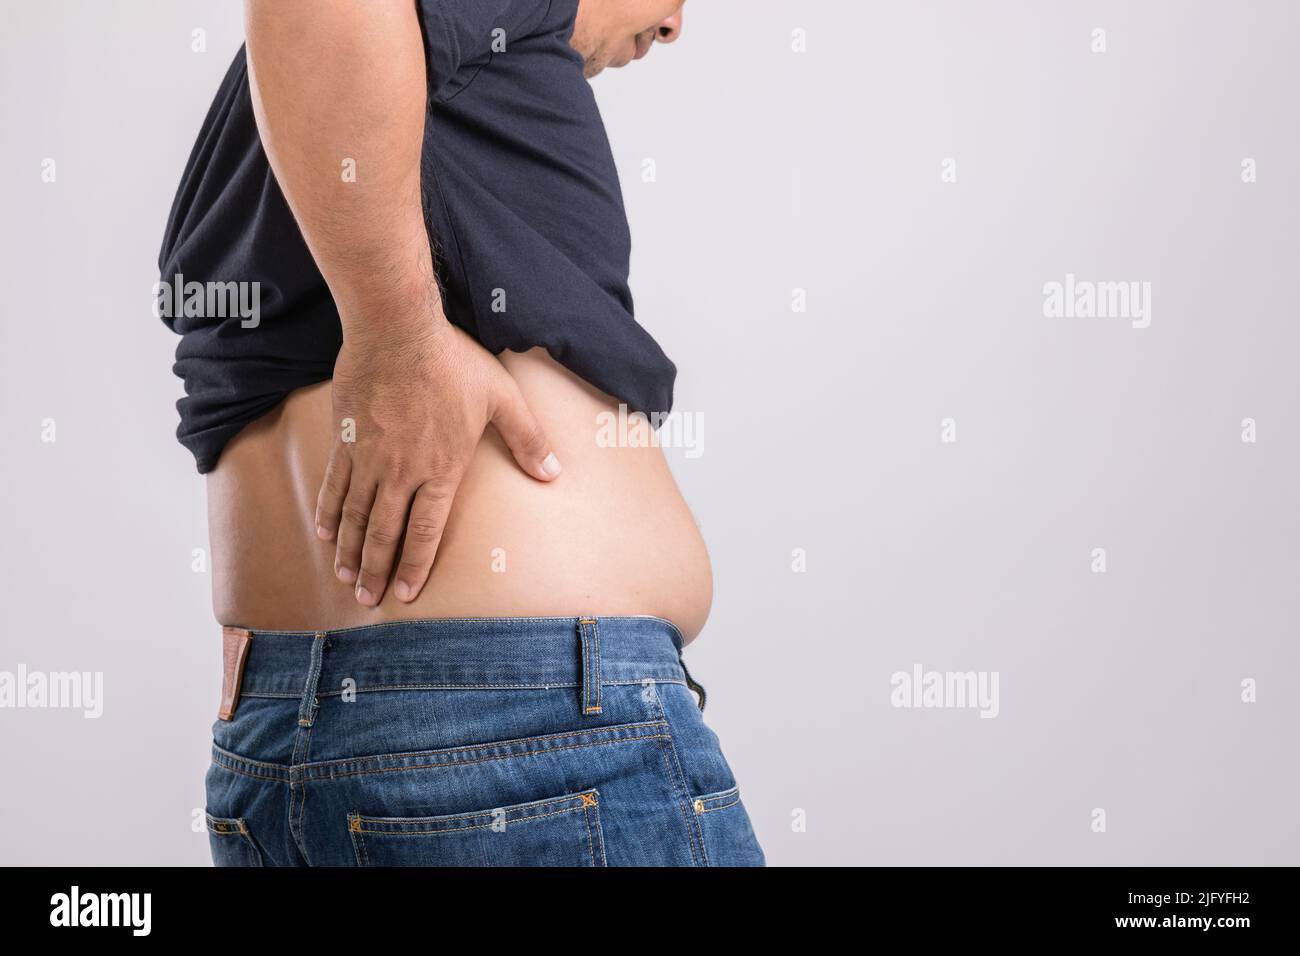 Körperschmerzen, Hüftschmerzen oder Auswirkungen von Leberproblemen : fetter Mann mit der Hand und Druck auf die Hüftposition. Studio auf grauem Hintergrund aufgenommen. Stockfoto